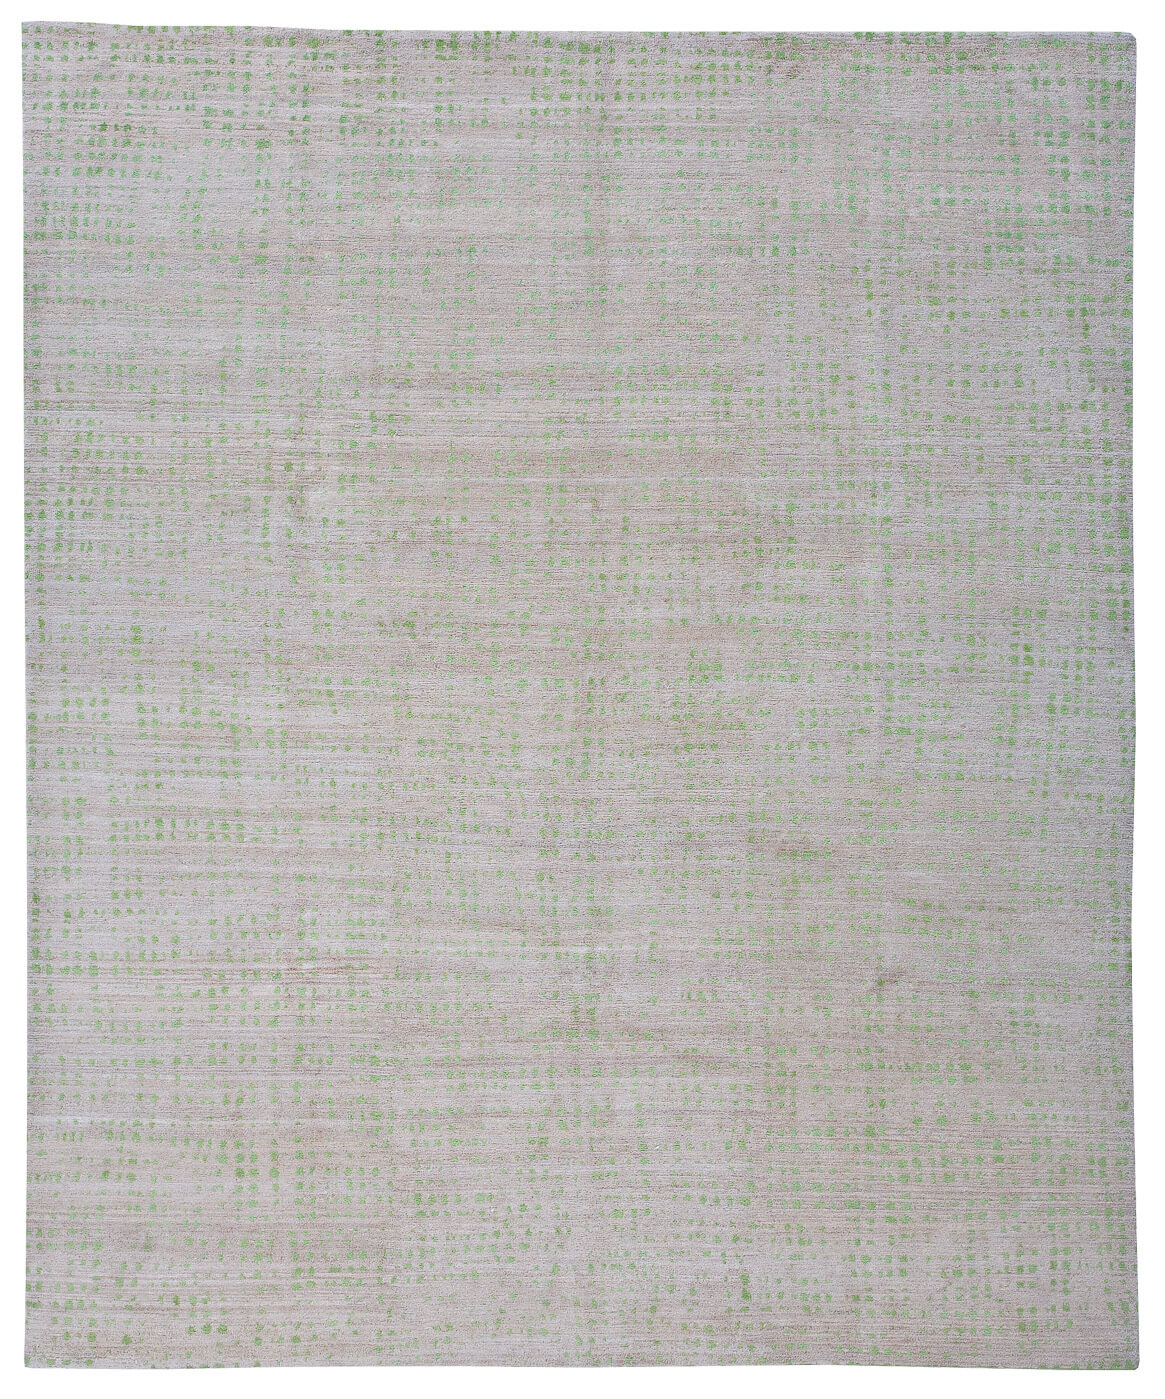 Netzwerk Grey Green Luxury Hand-woven Rug ☞ Size: 200 x 300 cm